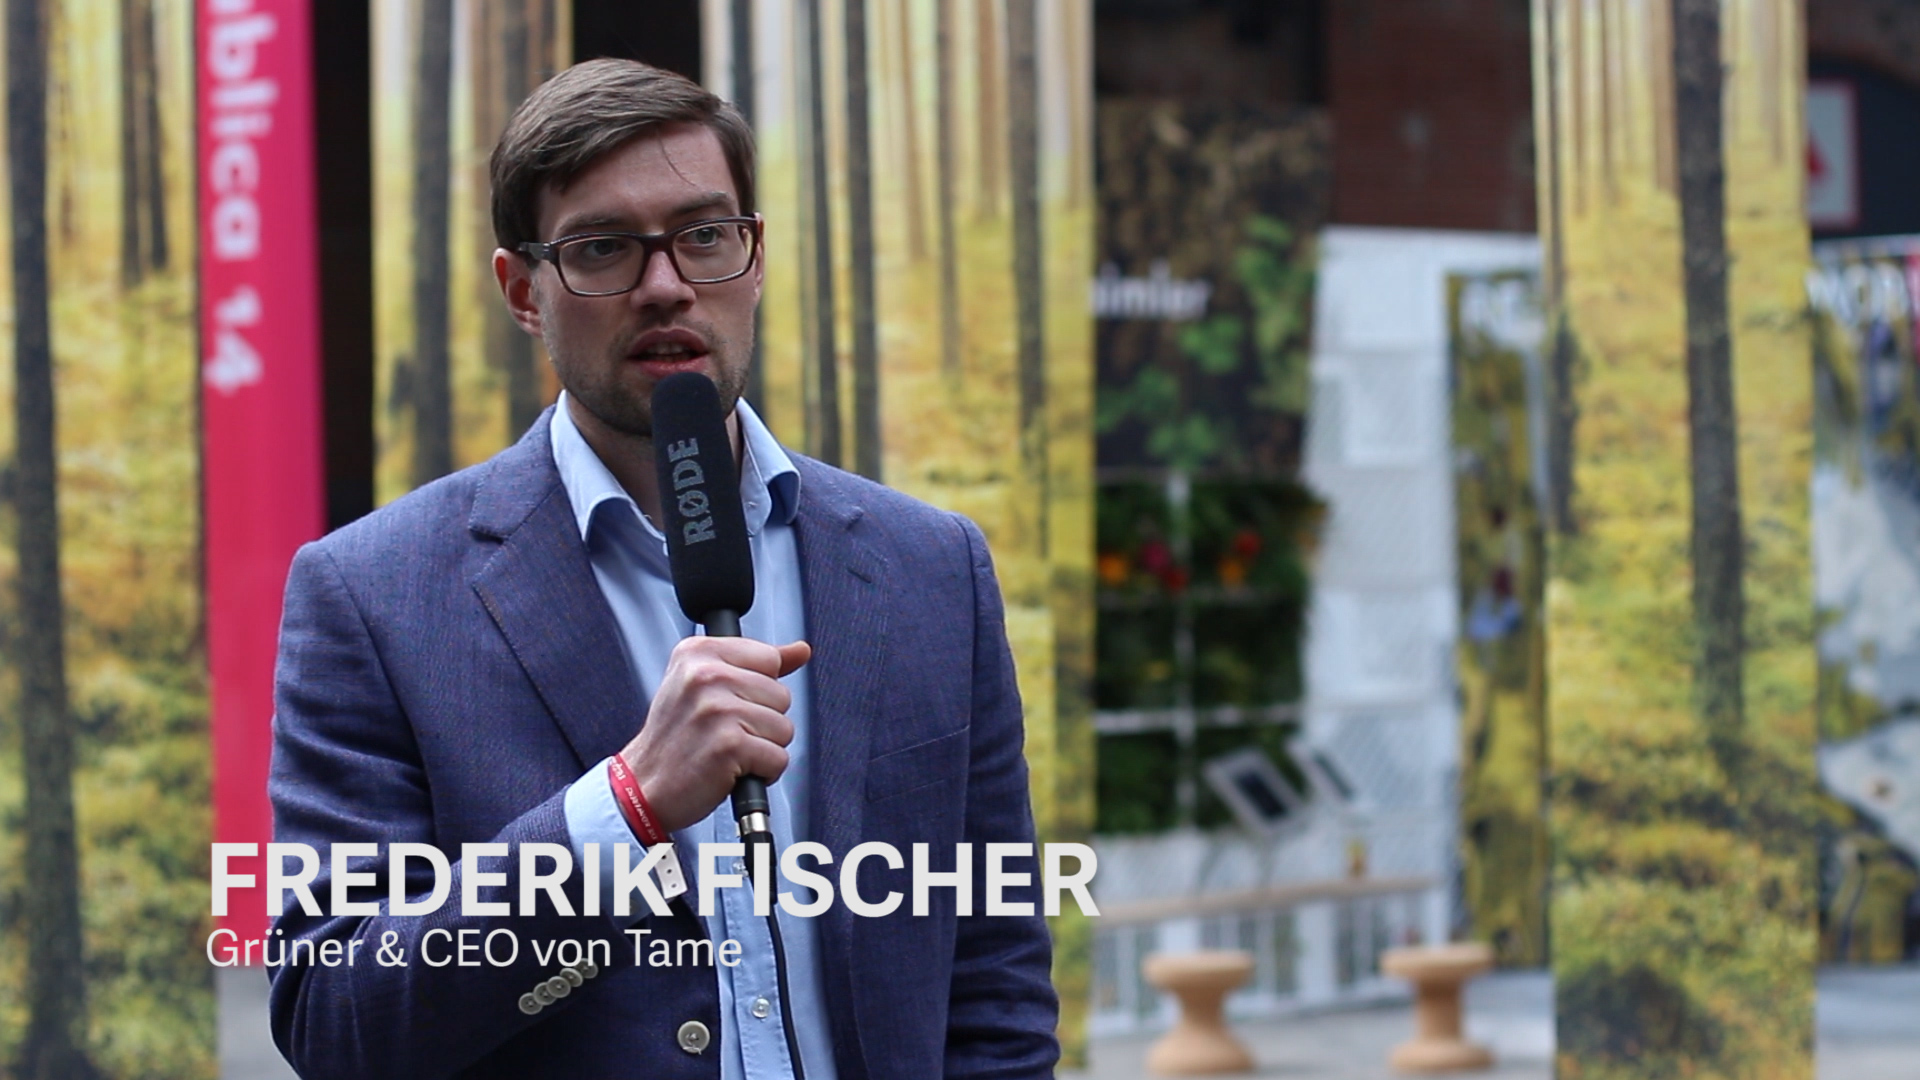 Frederik Fischer, Gründer & CEO von Tame